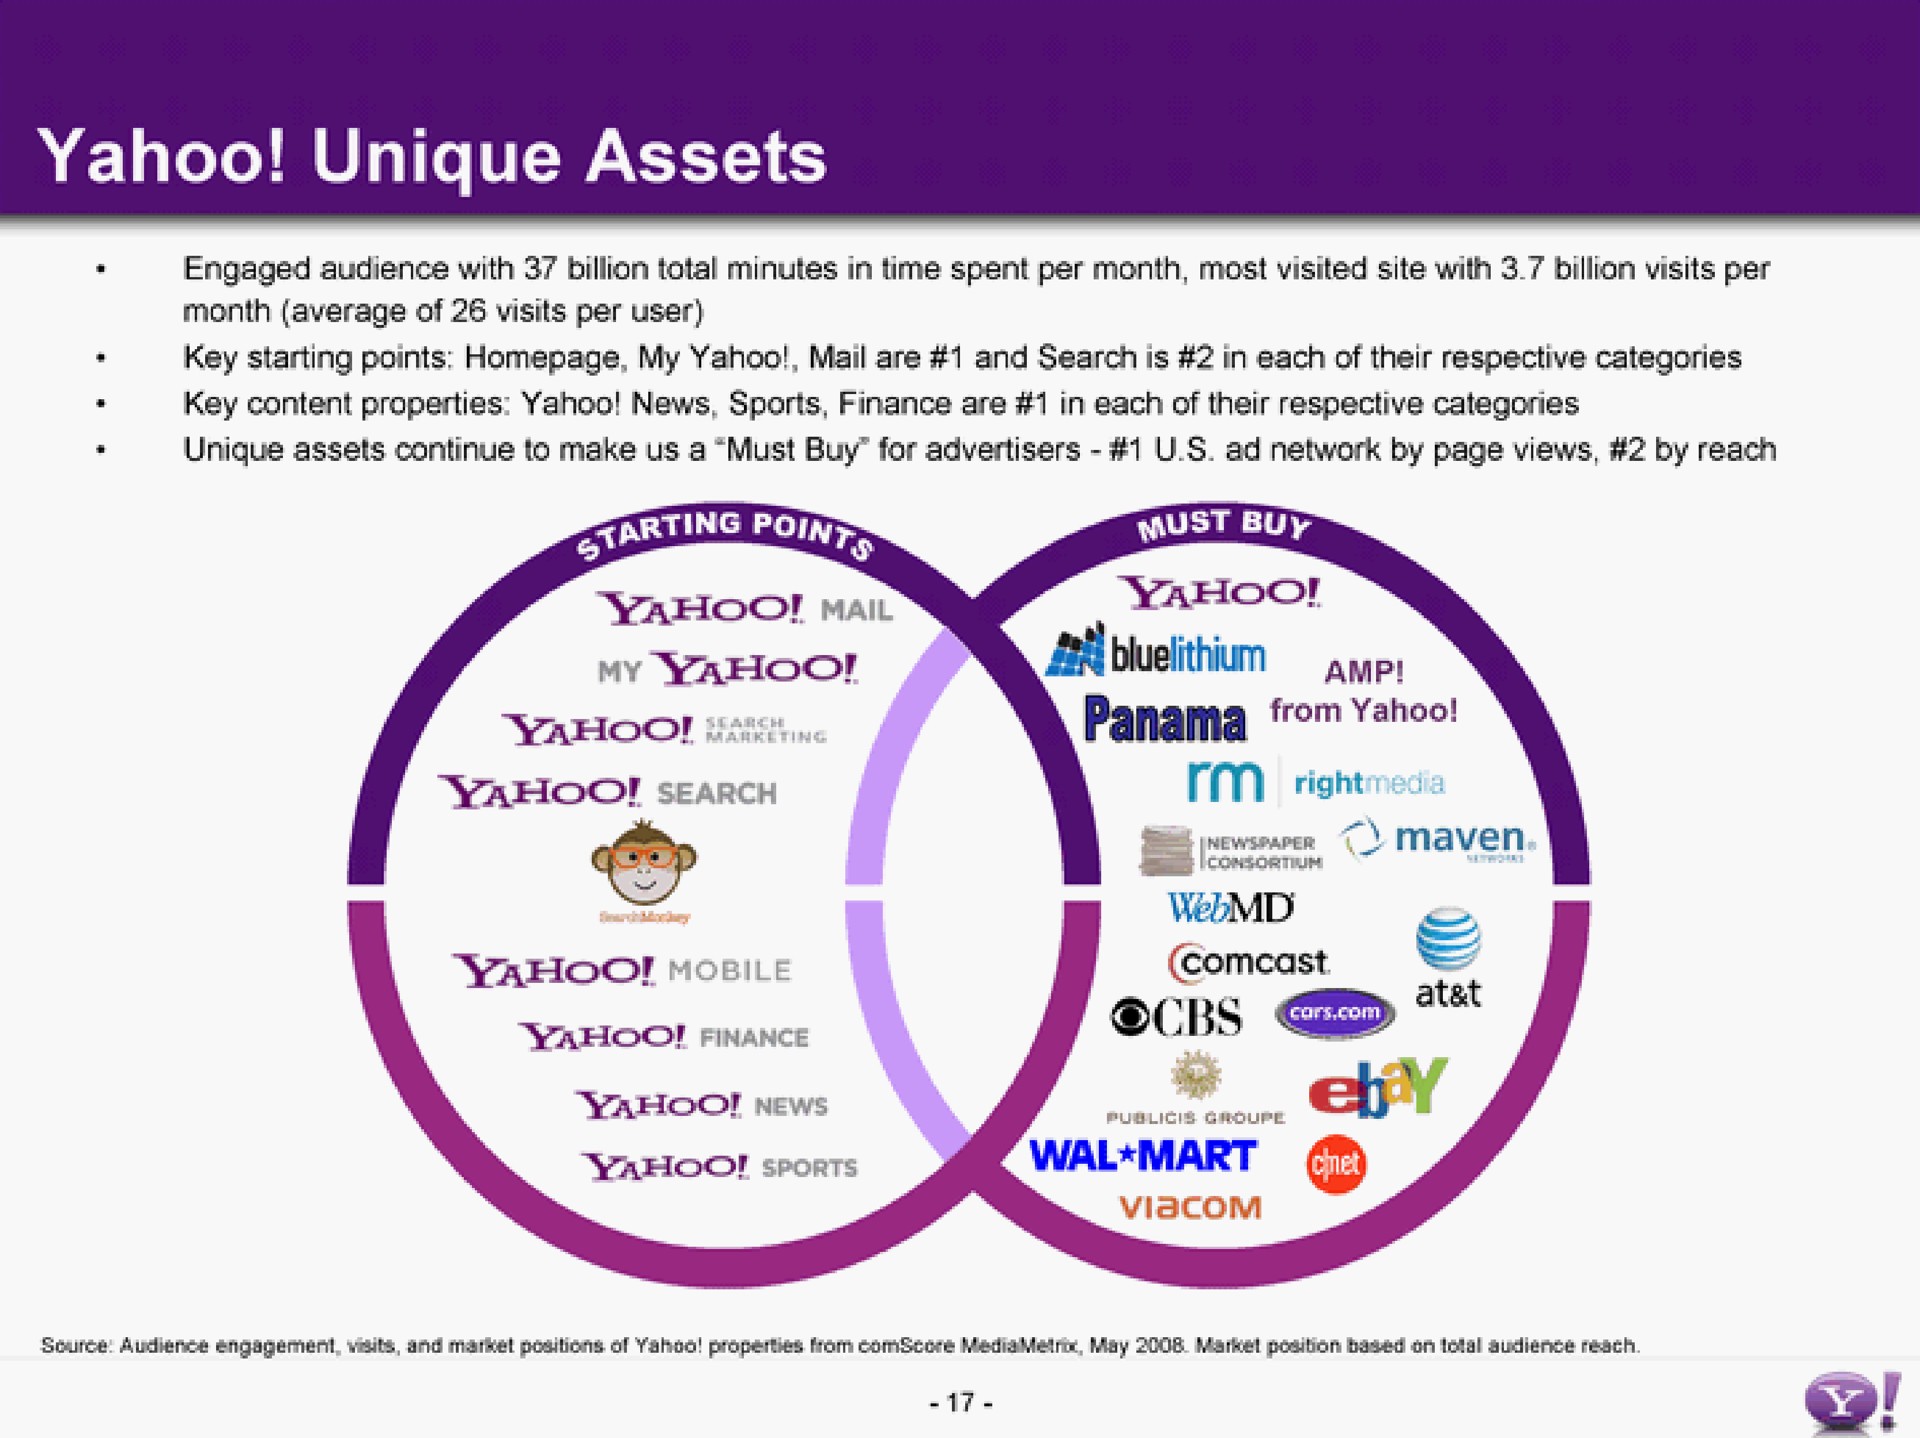 yahoo unique assets | Yahoo